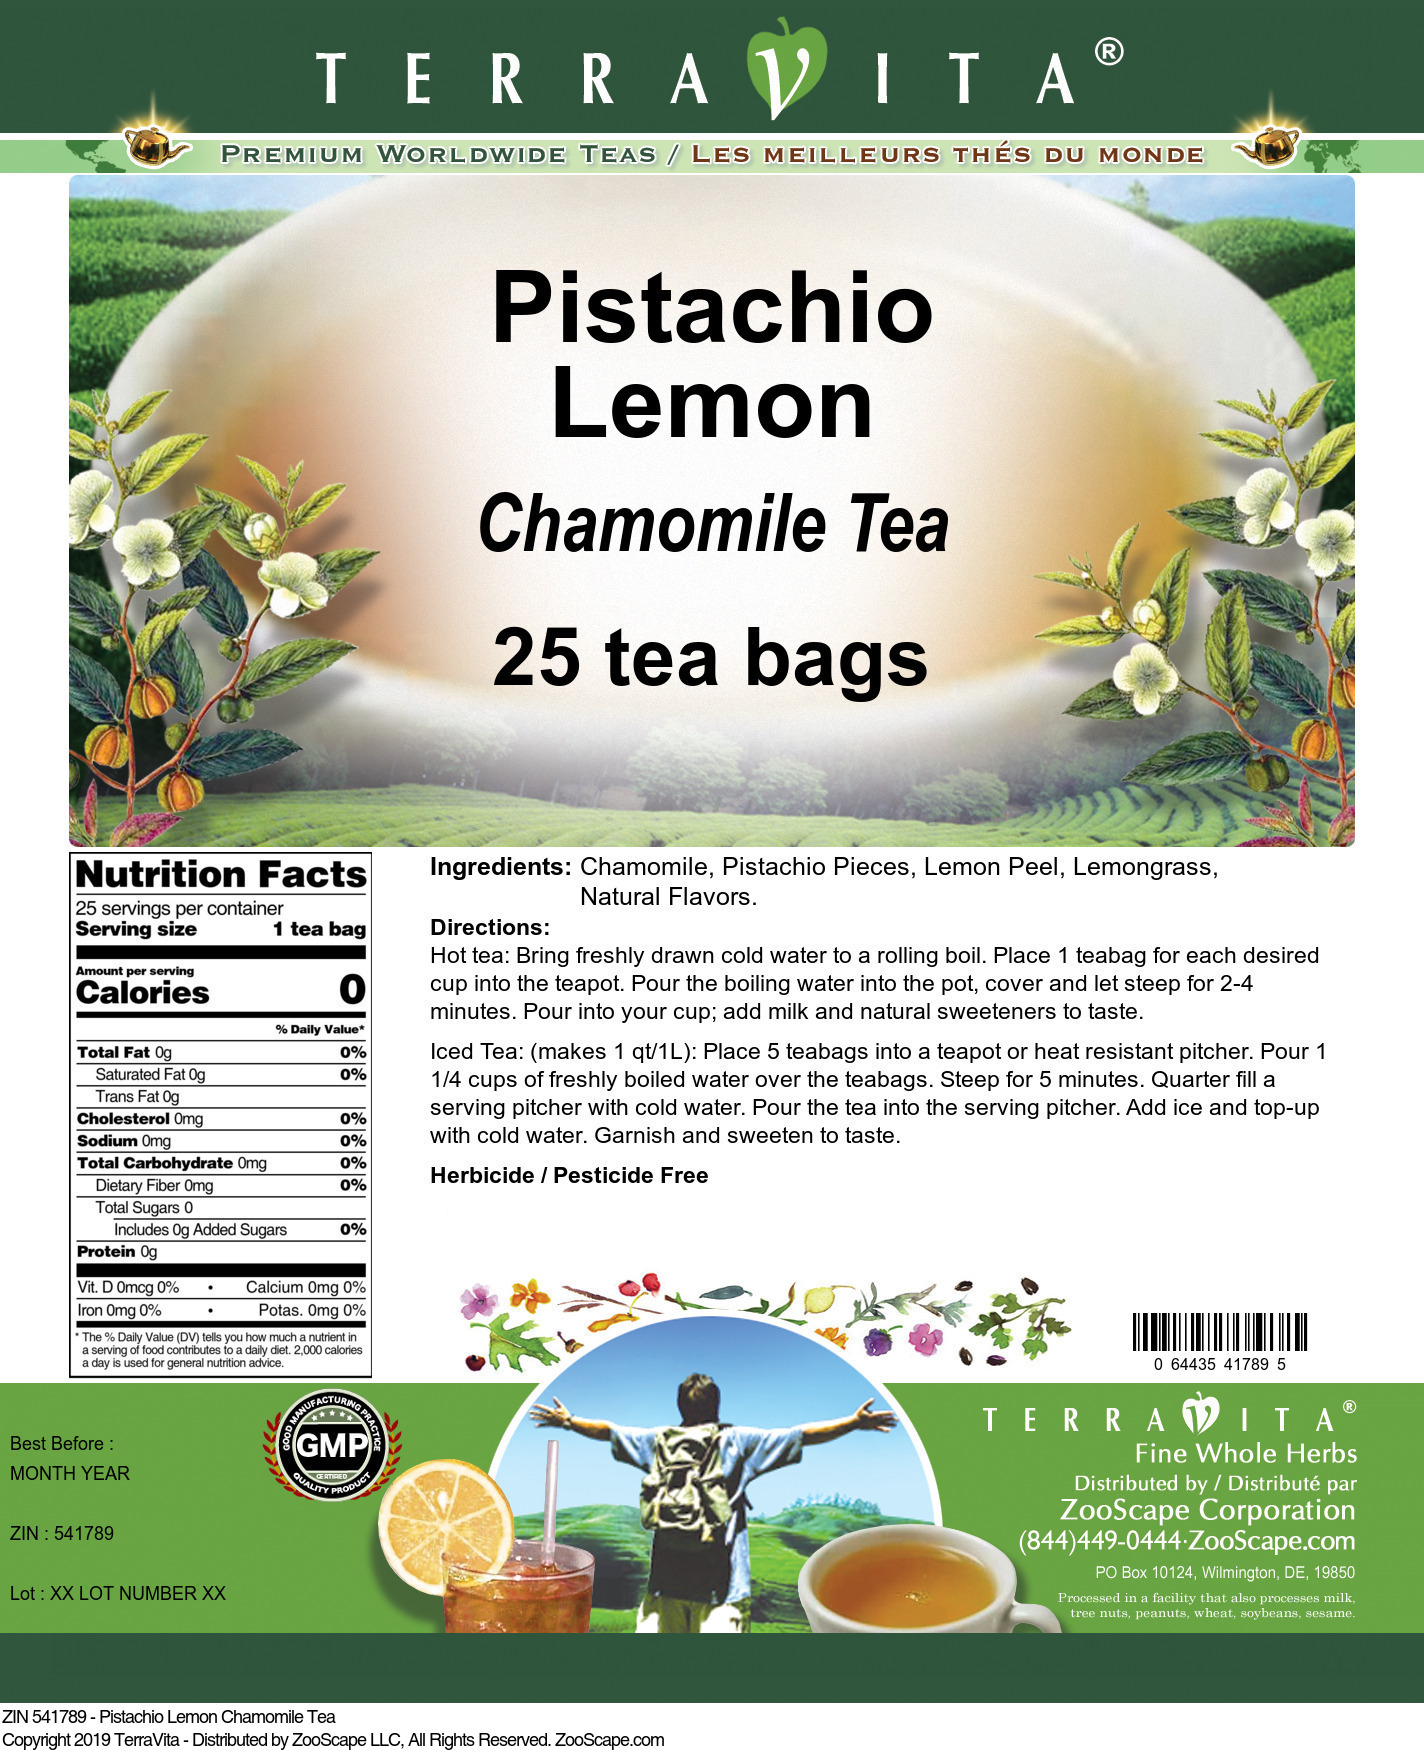 Pistachio Lemon Chamomile Tea - Label